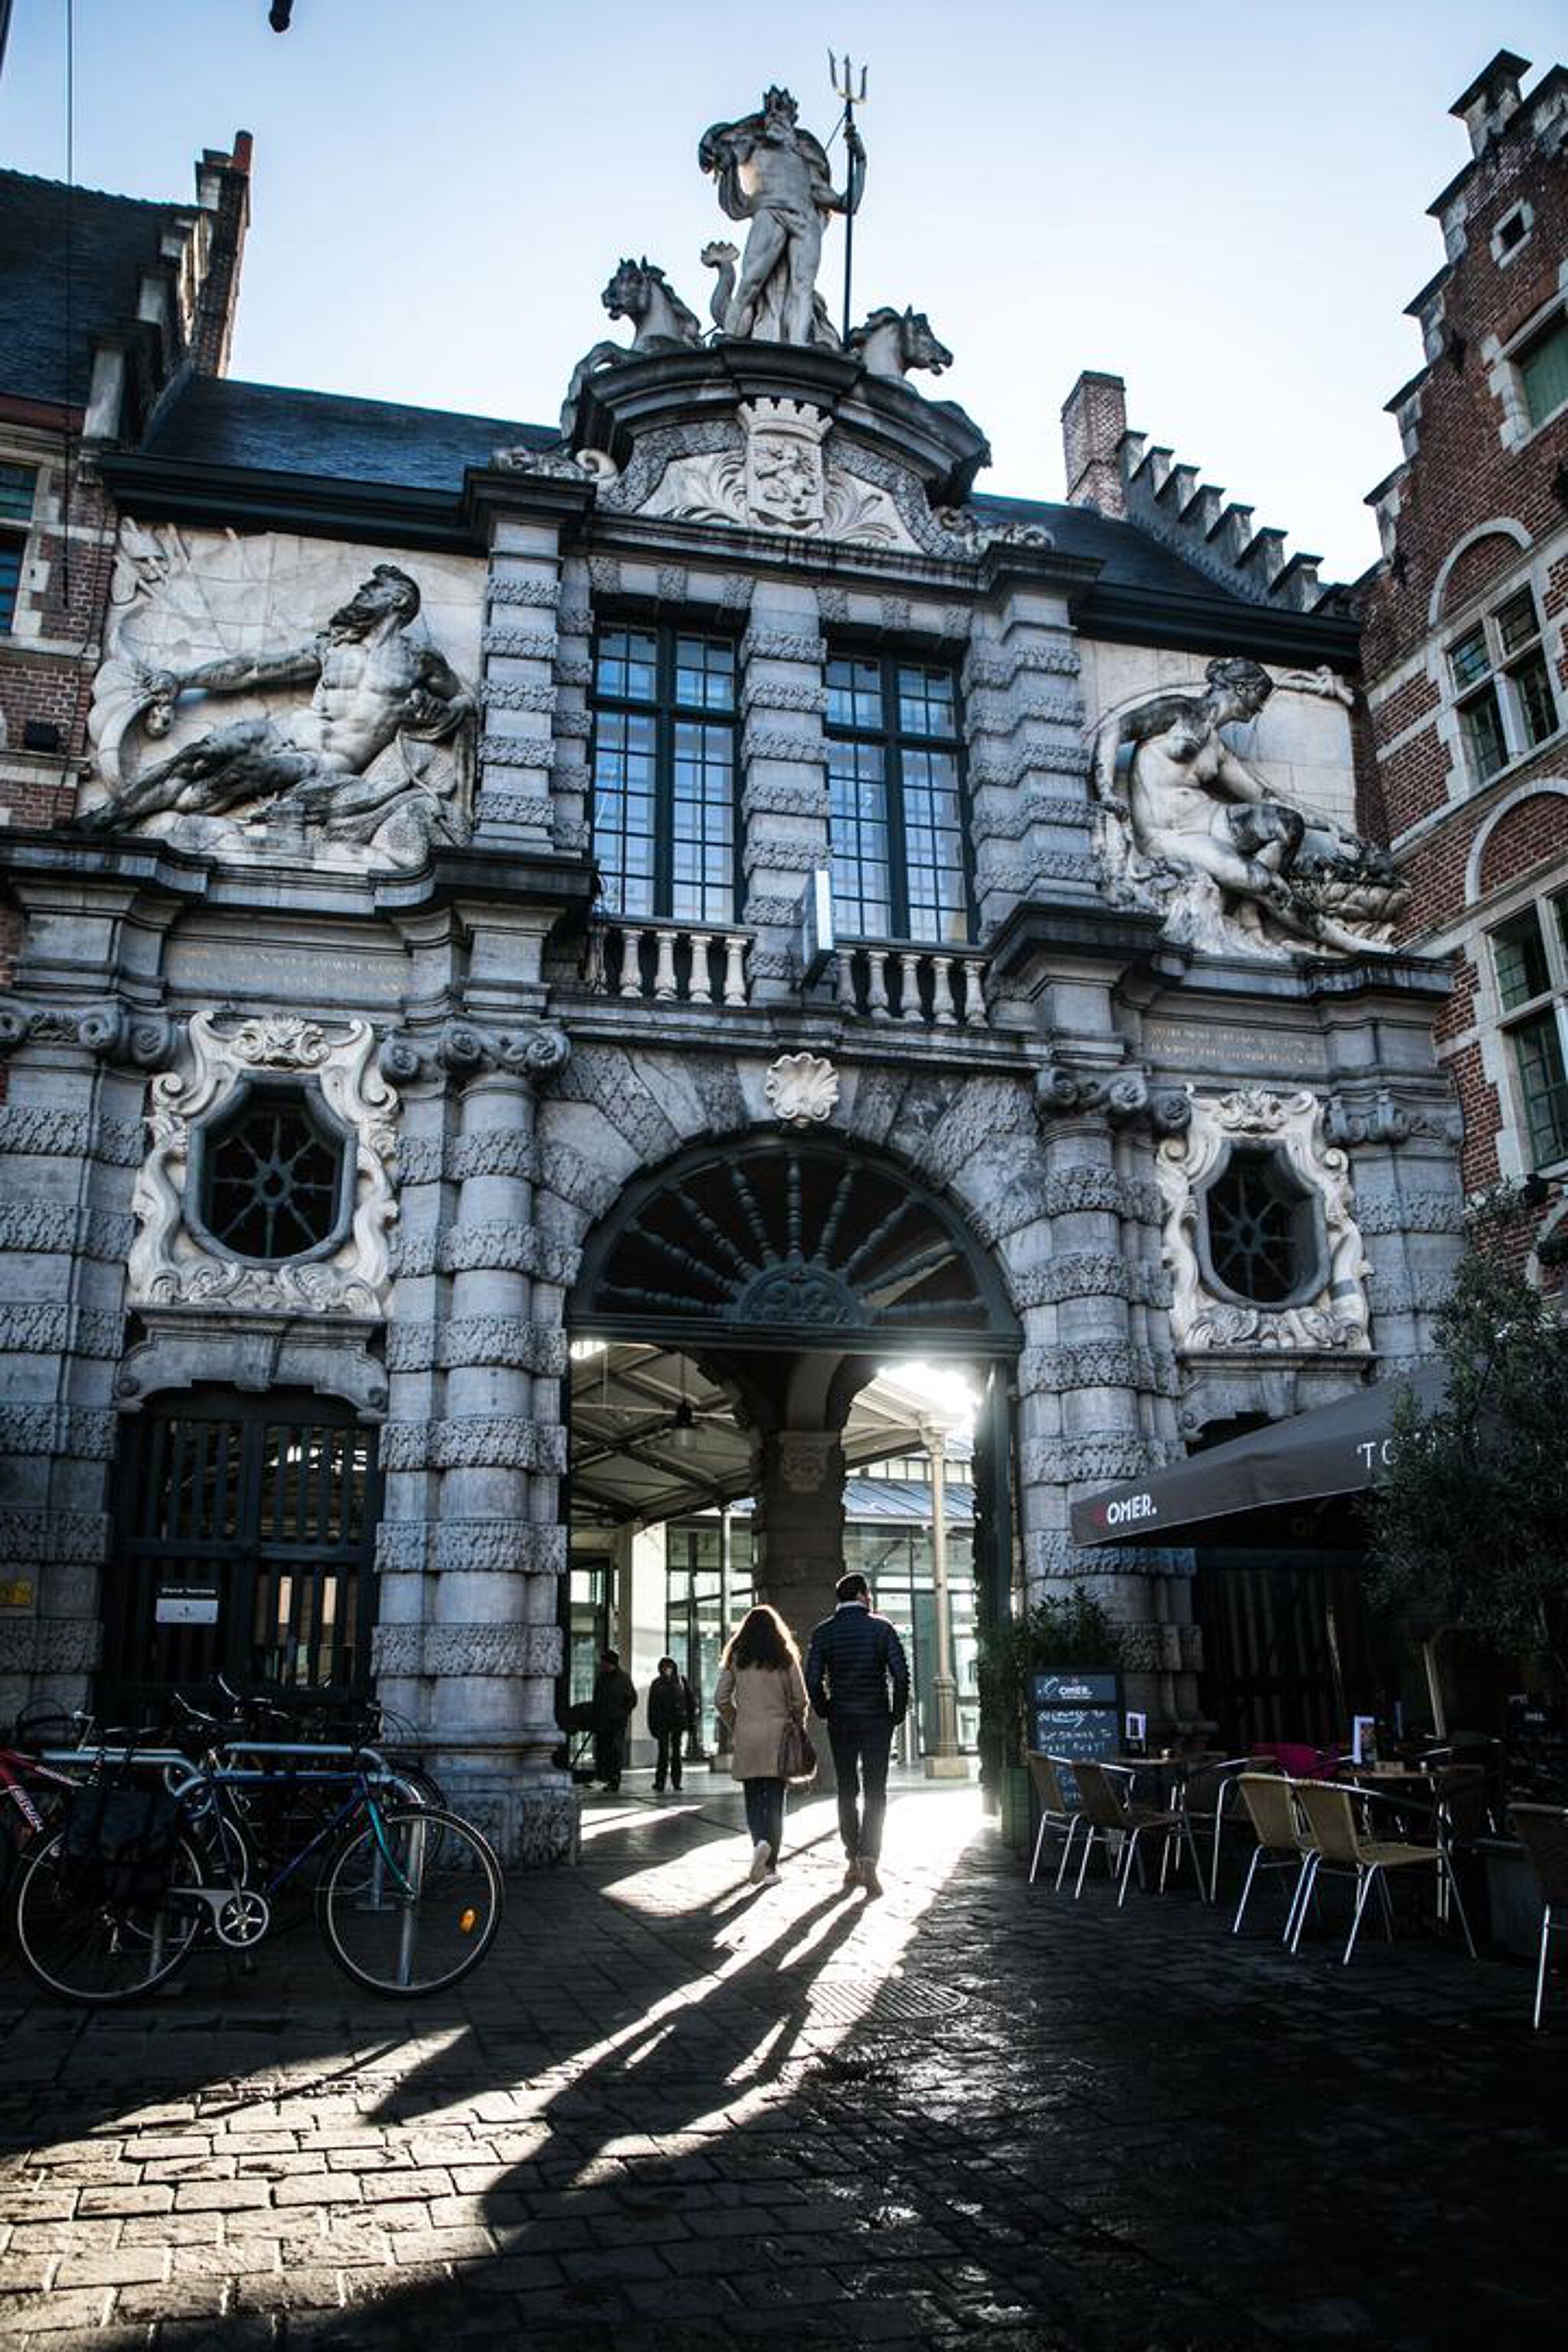 &mdash;Visit Gent - tourism info